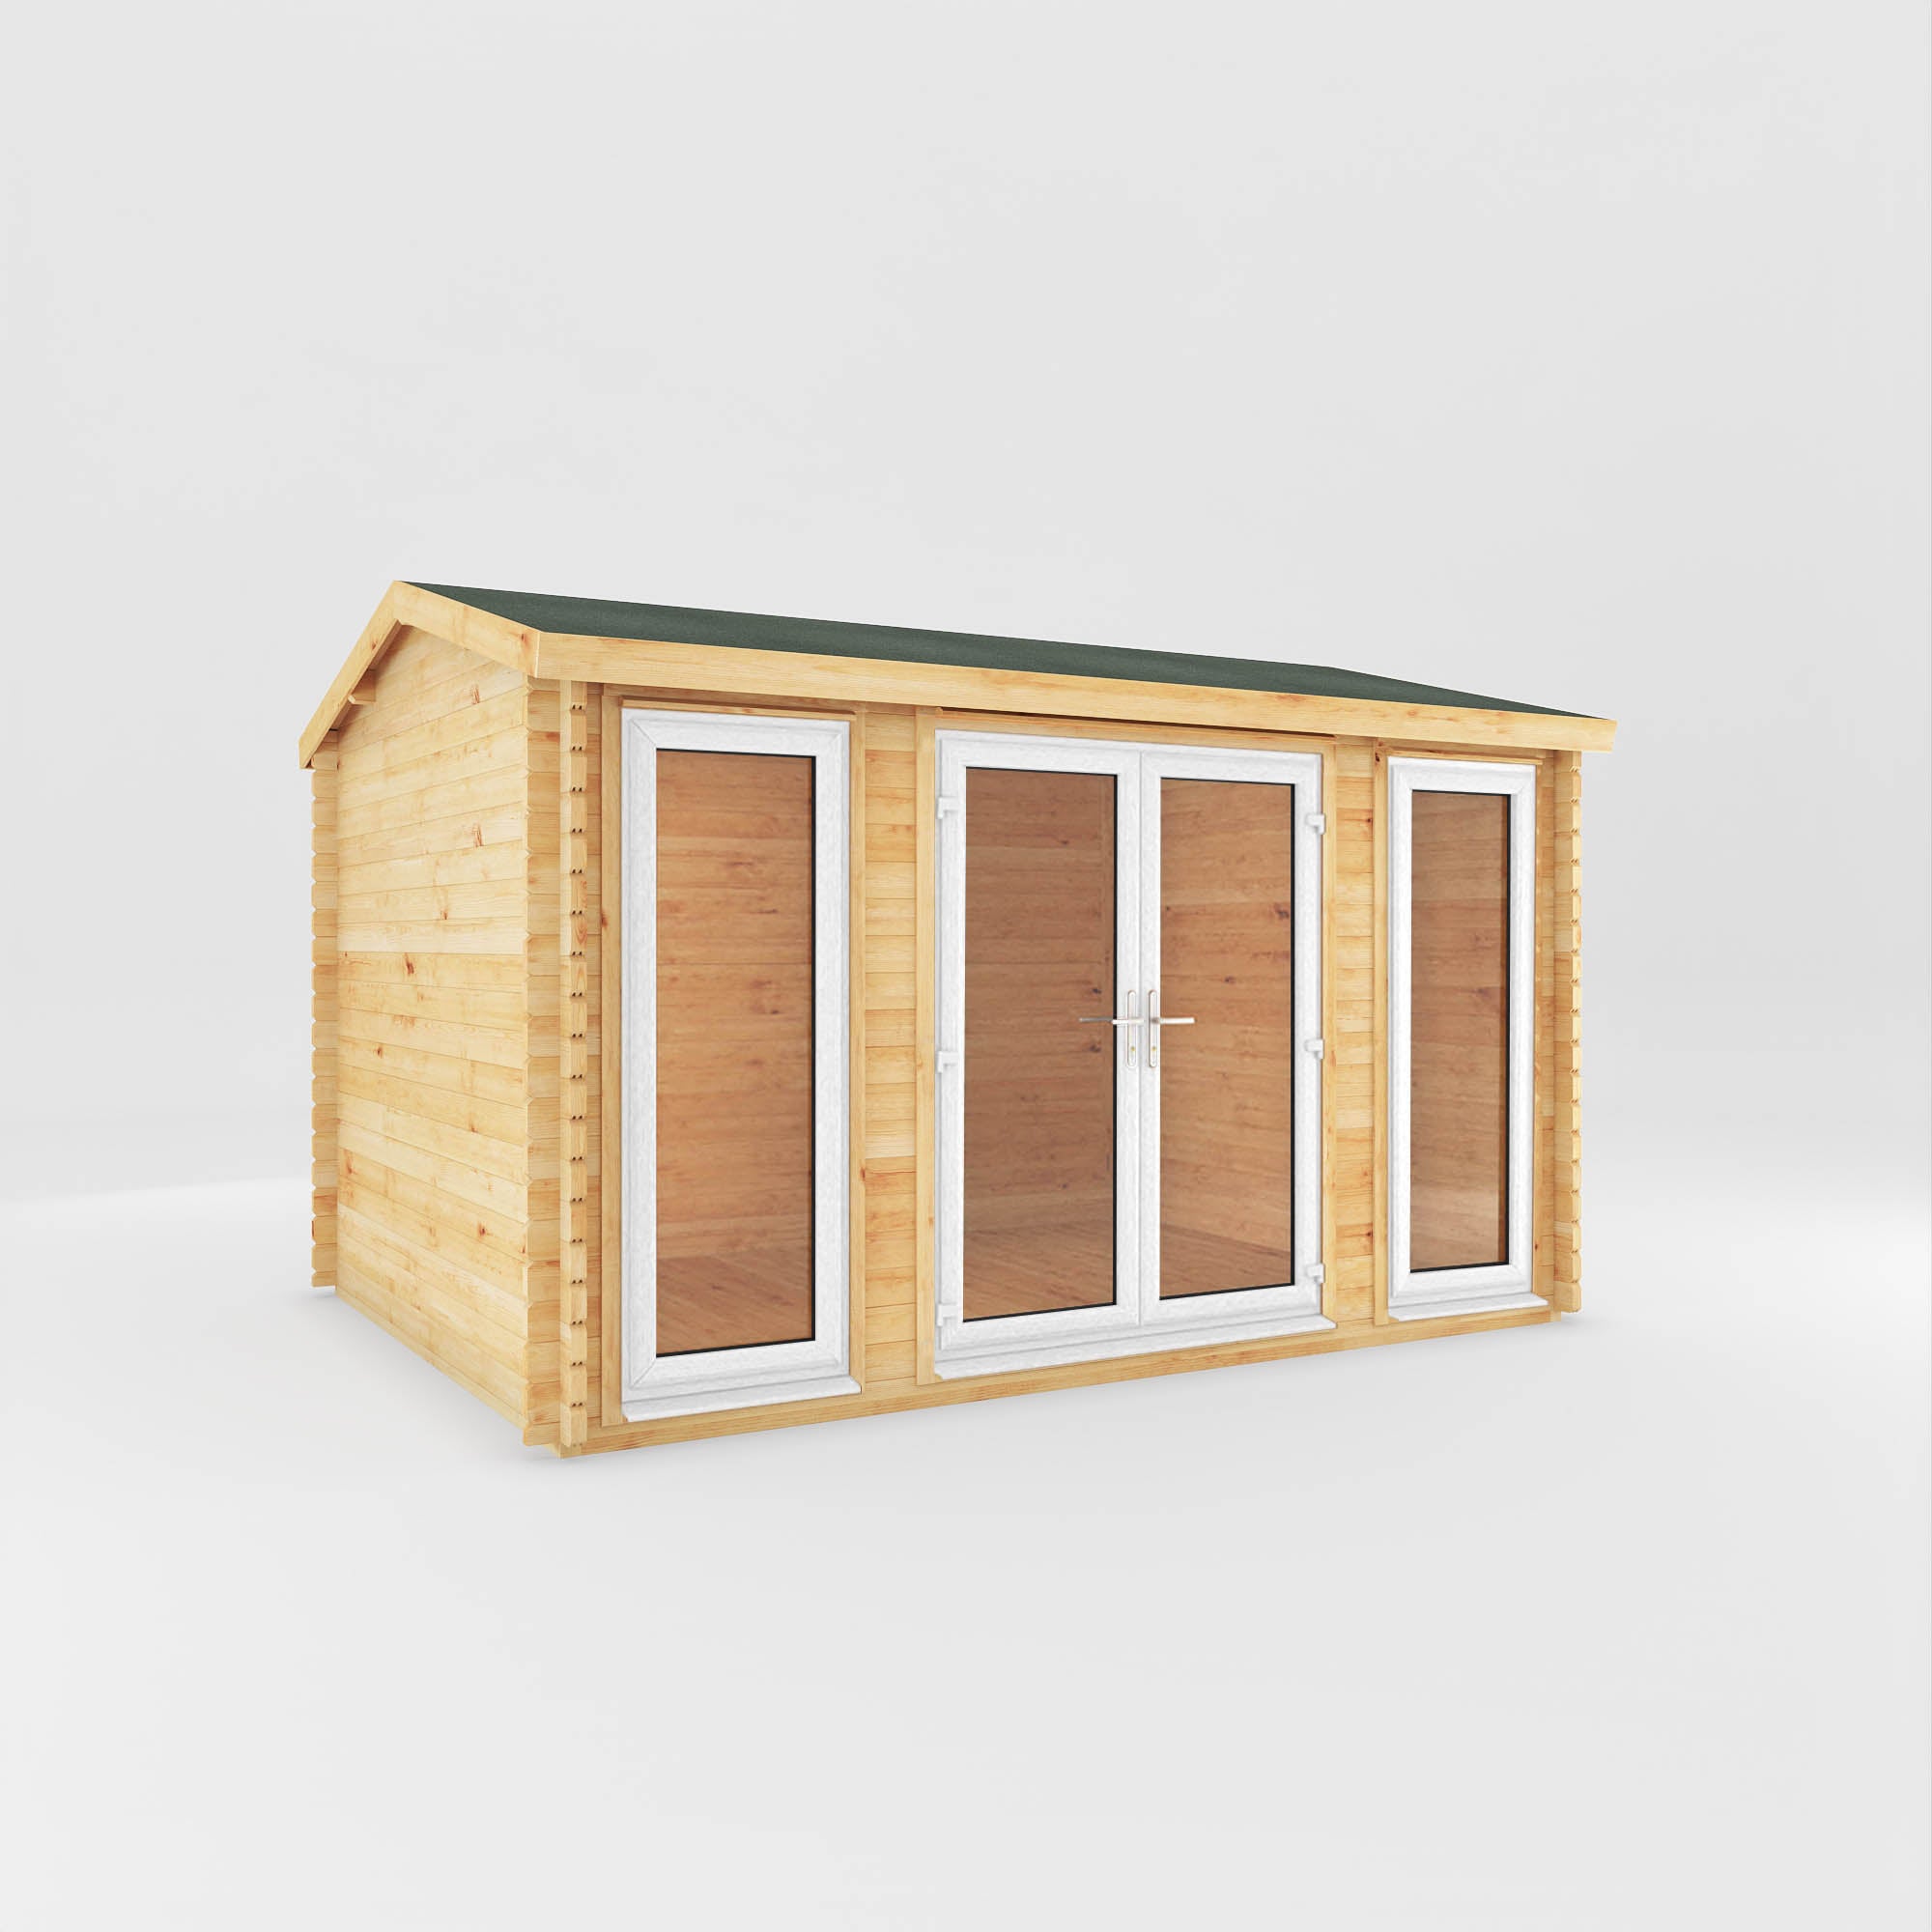 4m x 3m Home Office Studio Log Cabin - UPVC White